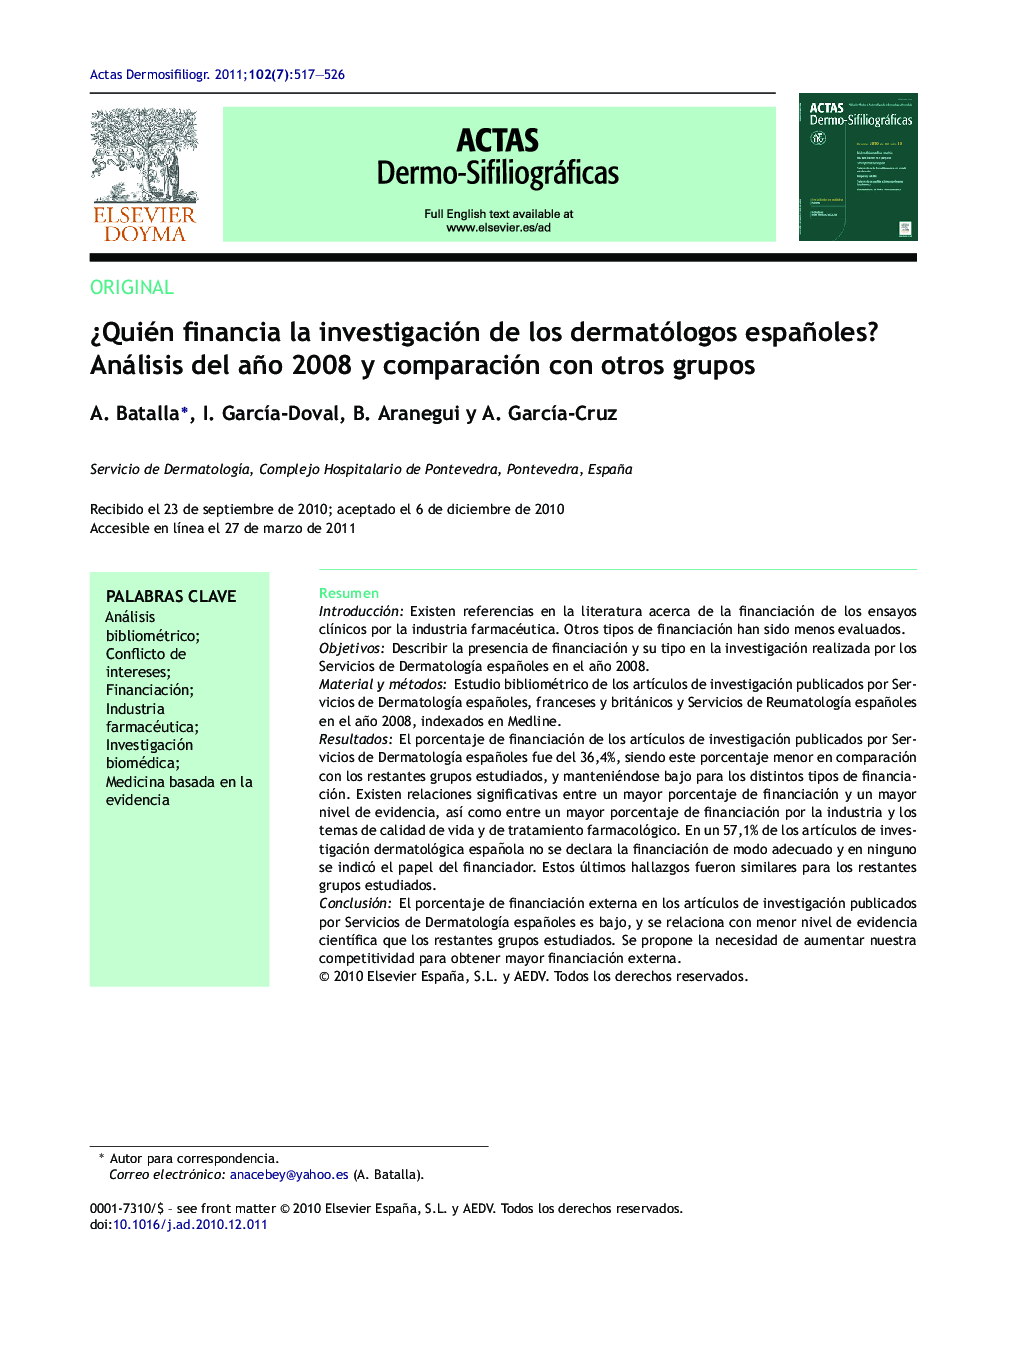 ¿Quién financia la investigación de los dermatólogos españoles? Análisis del año 2008 y comparación con otros grupos